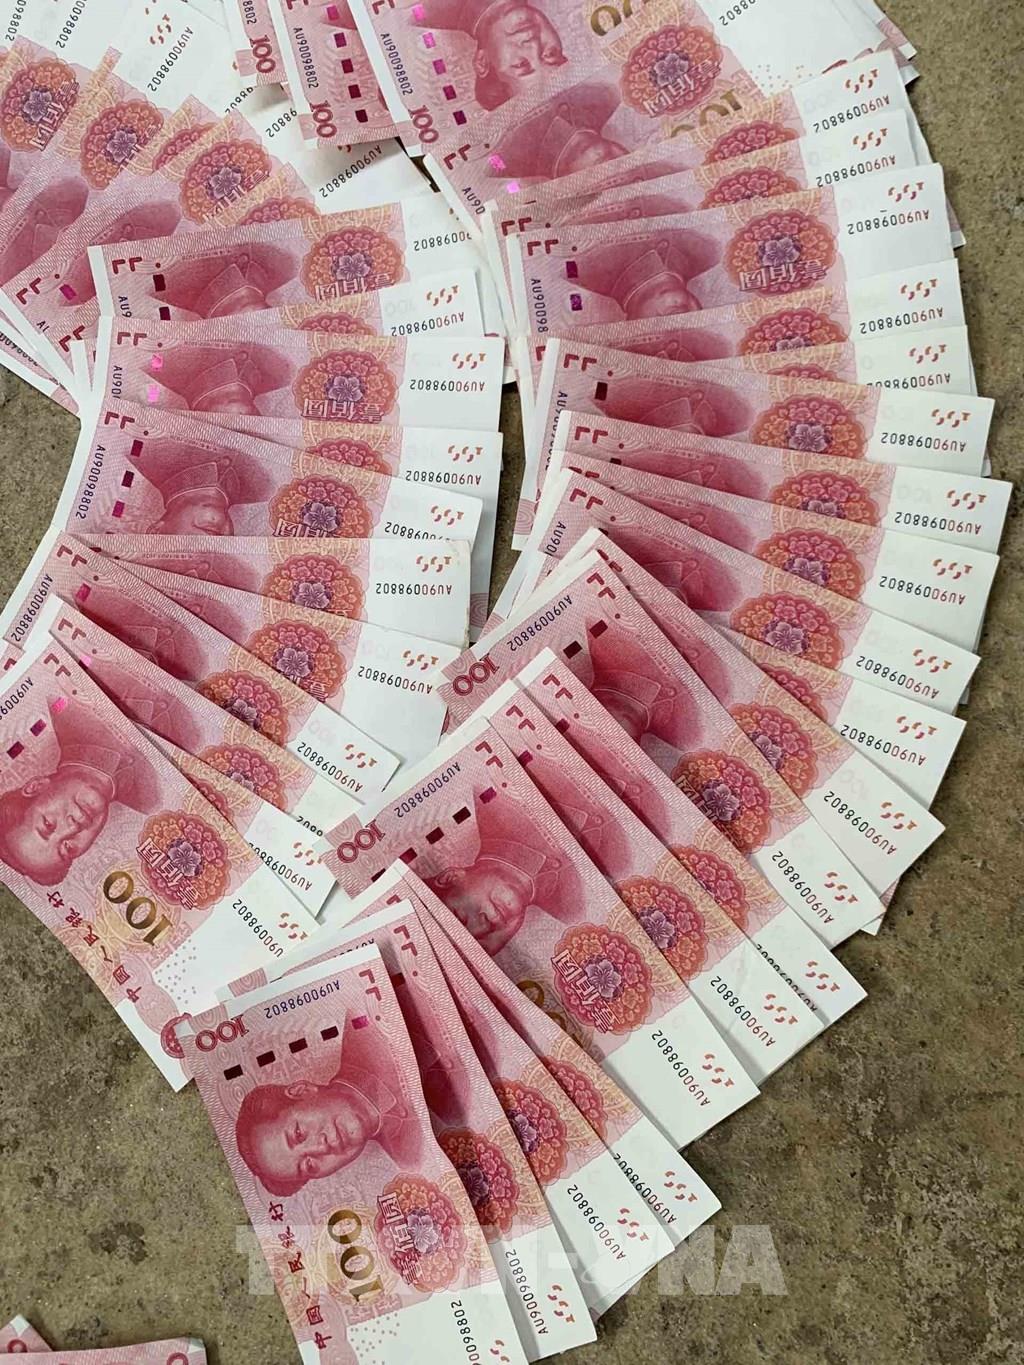 Tiền Trung Quốc giả là một vấn đề đang gây tranh cãi. Hãy xem các hình ảnh liên quan để tìm hiểu về cách nhận biết và cẩn trọng khi sử dụng tiền tệ này.